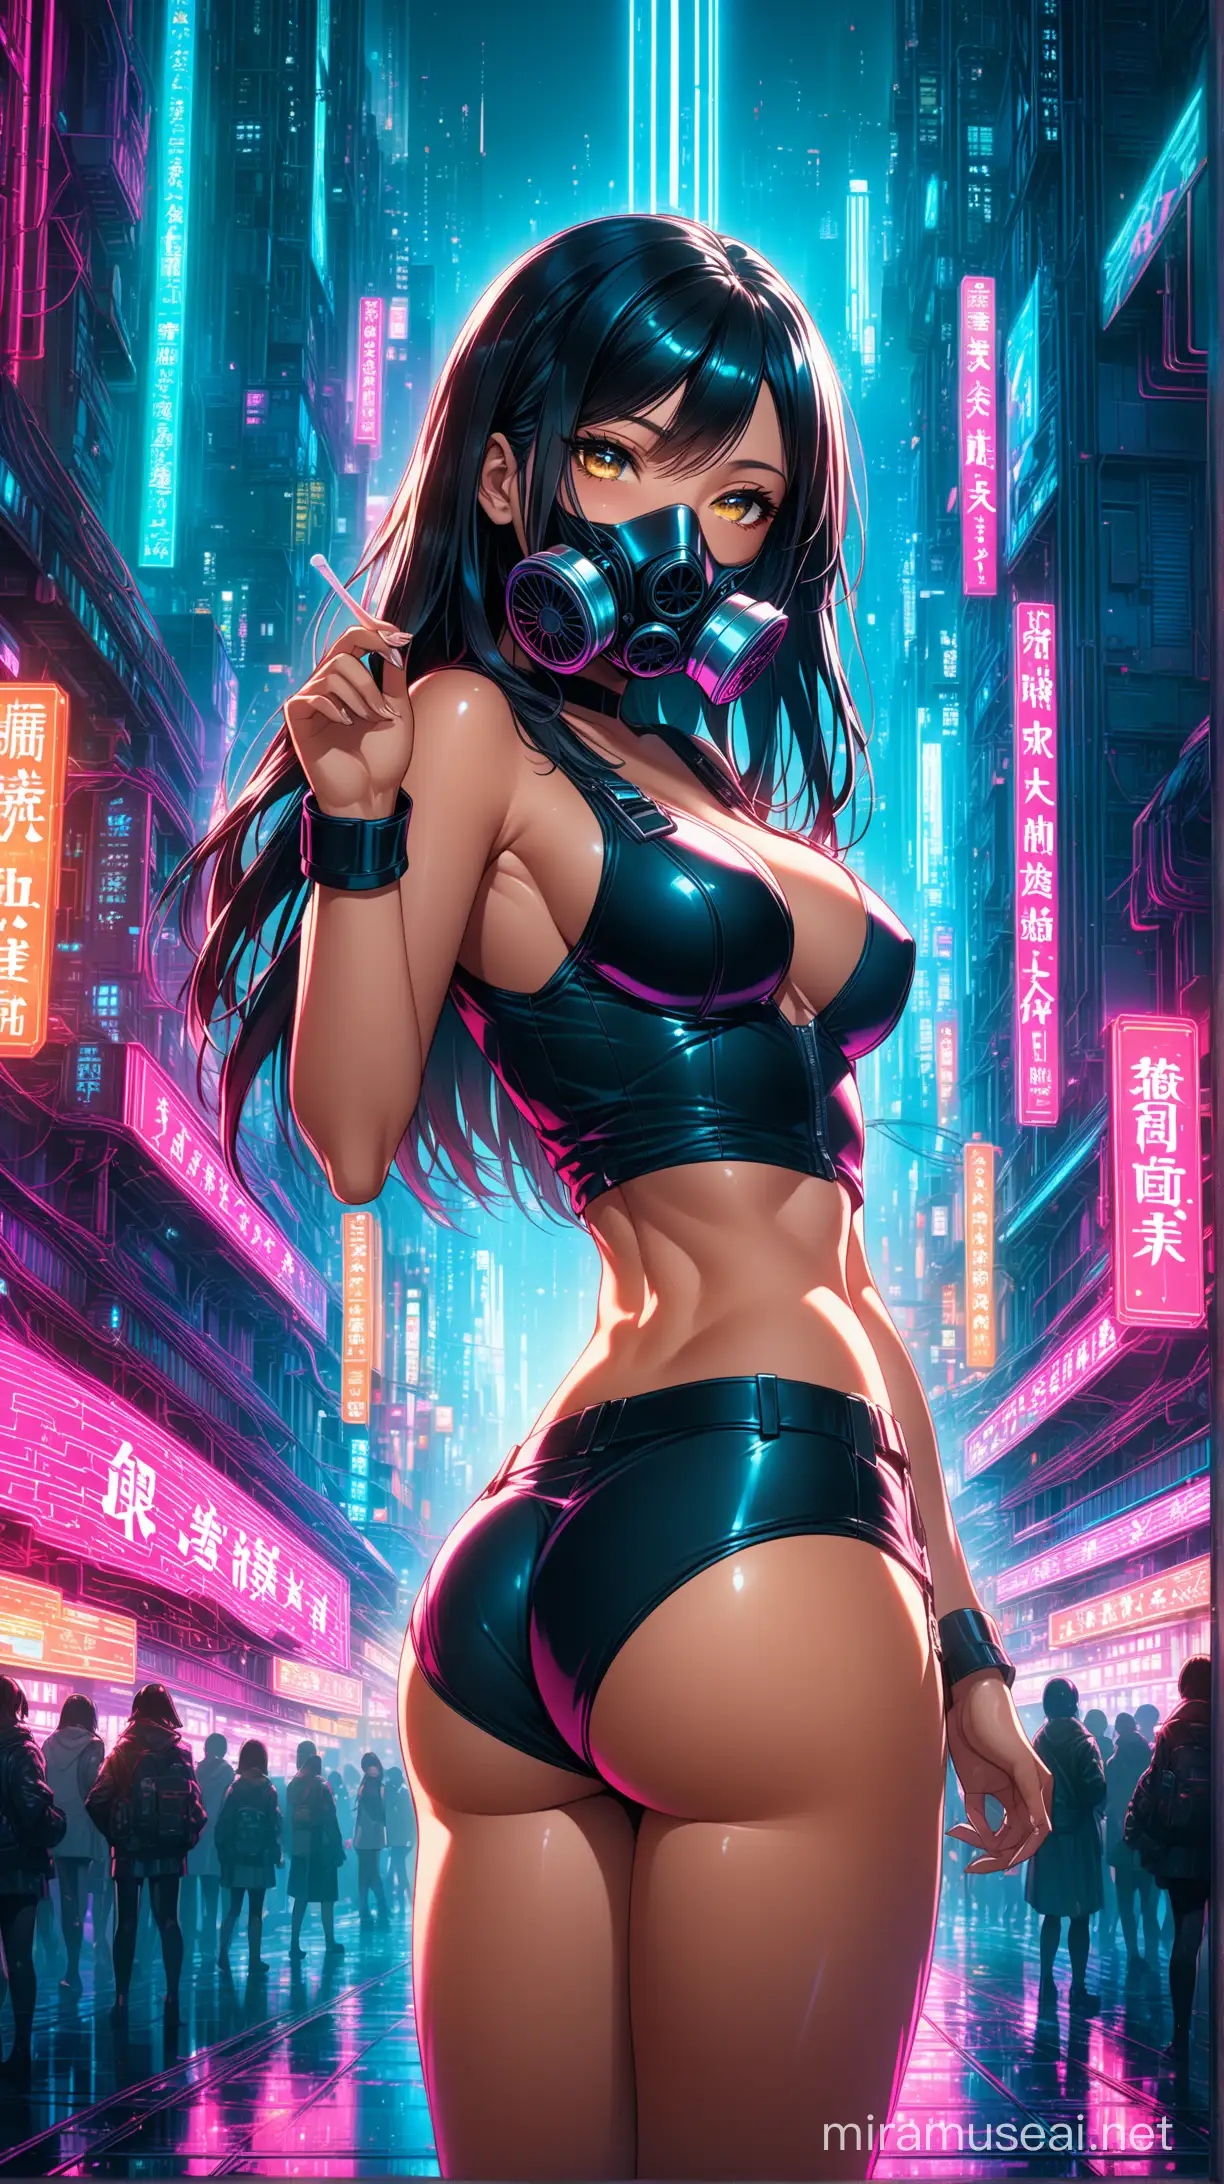 Futuristic Cyberpunk Anime Schoolgirl in Gas Mask Amid Neon Cityscape